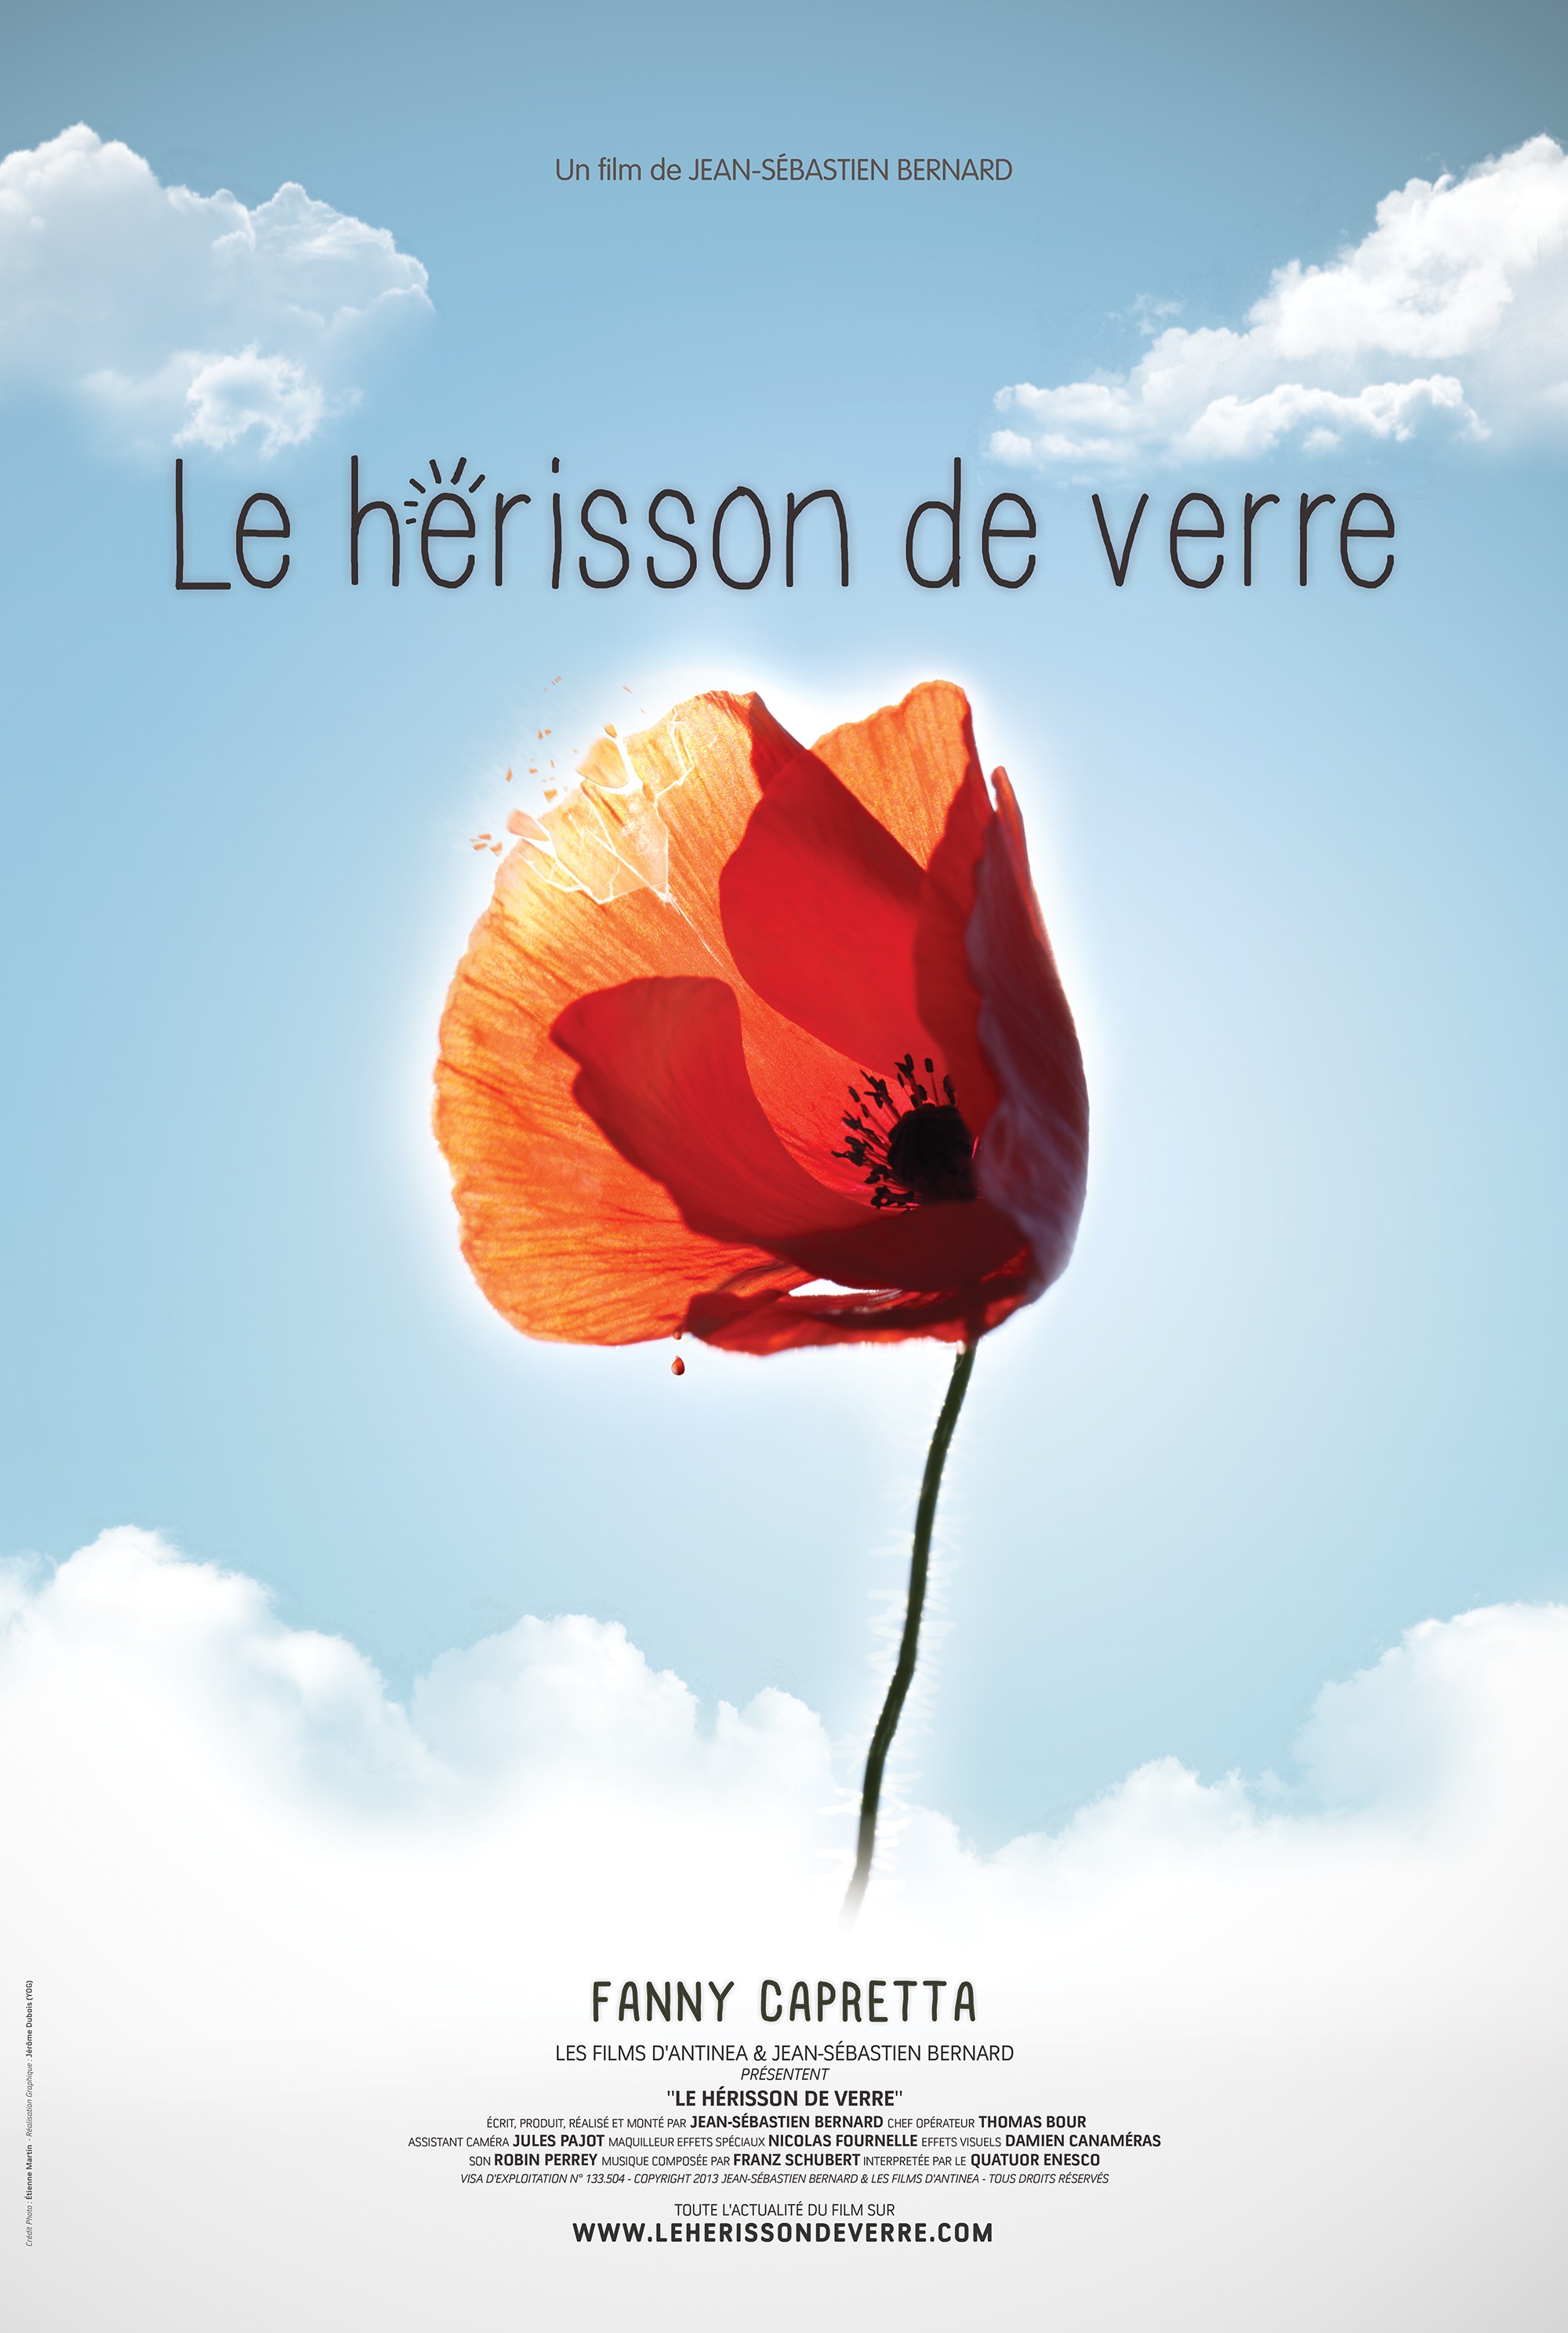 Mega Sized Movie Poster Image for Le hrisson de verre